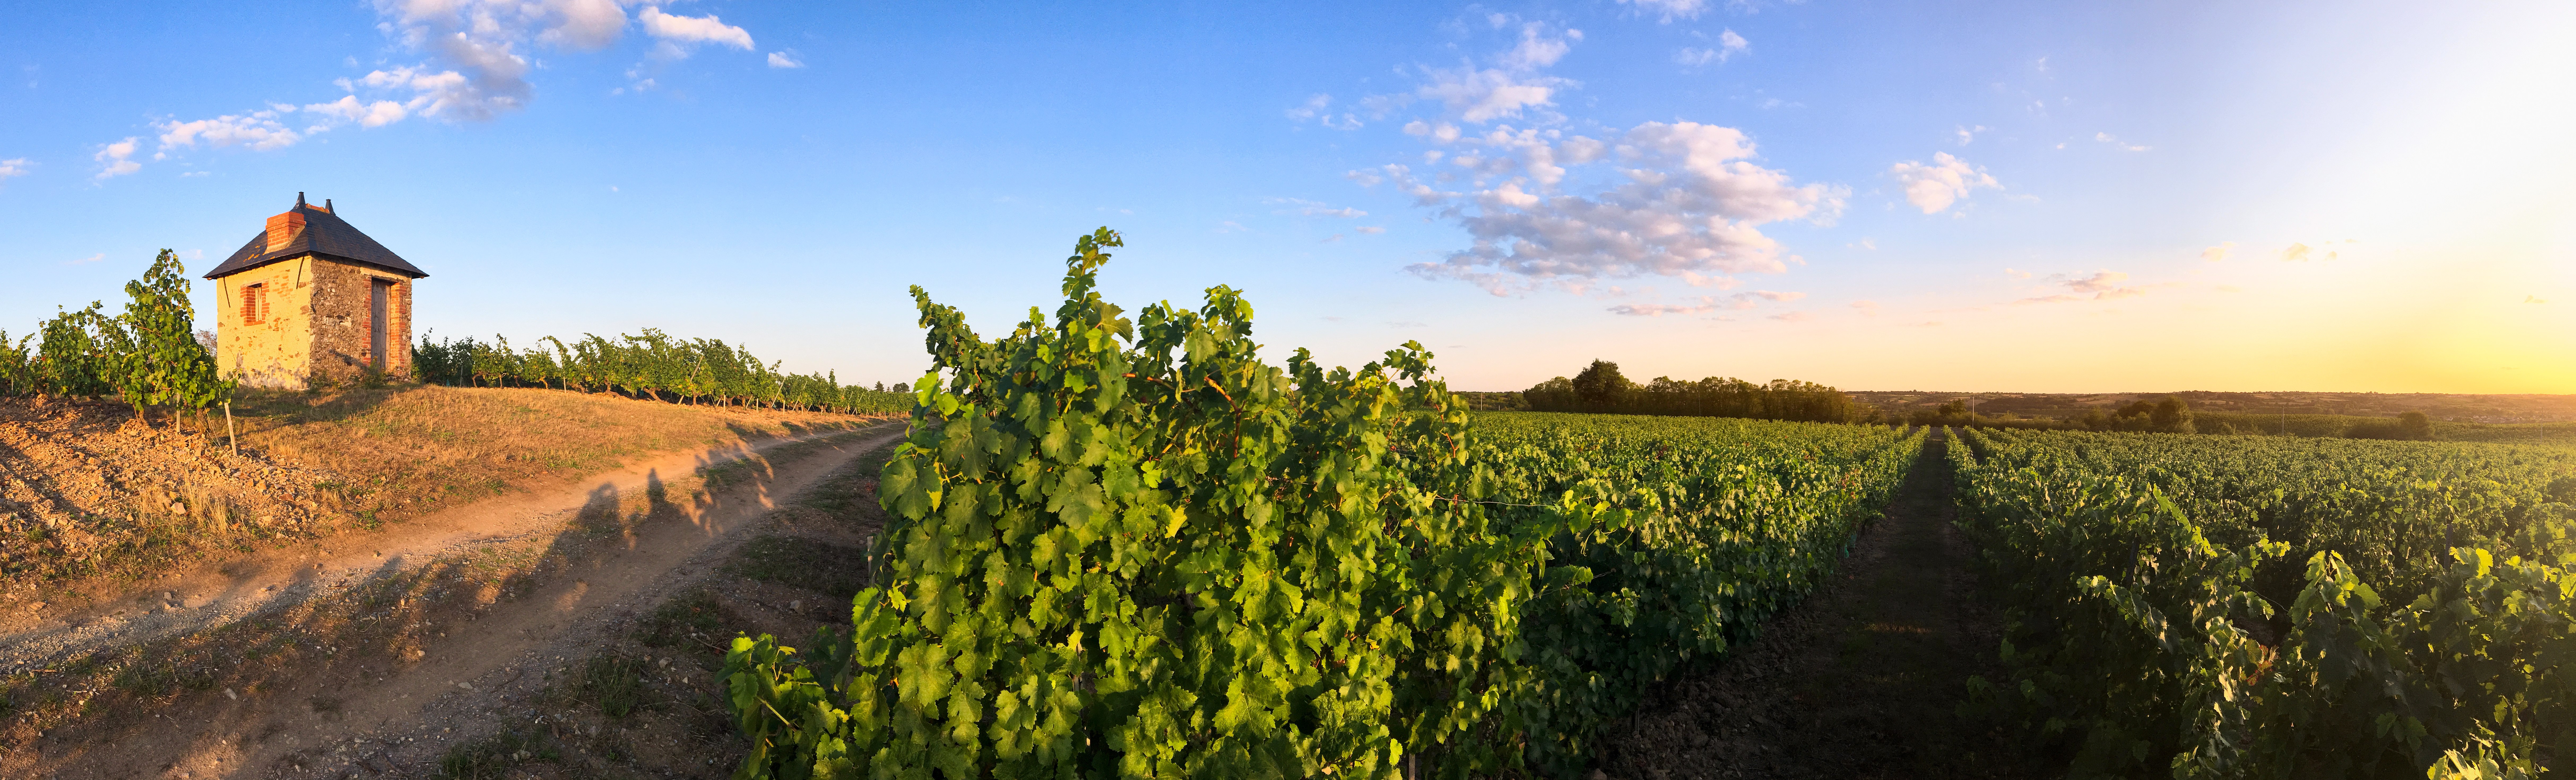 Pesquisa analisou se os vinhos tintos de Bordeaux e Napa estão se aproximando de um “ponto de inflexão” devido ao aquecimento global 